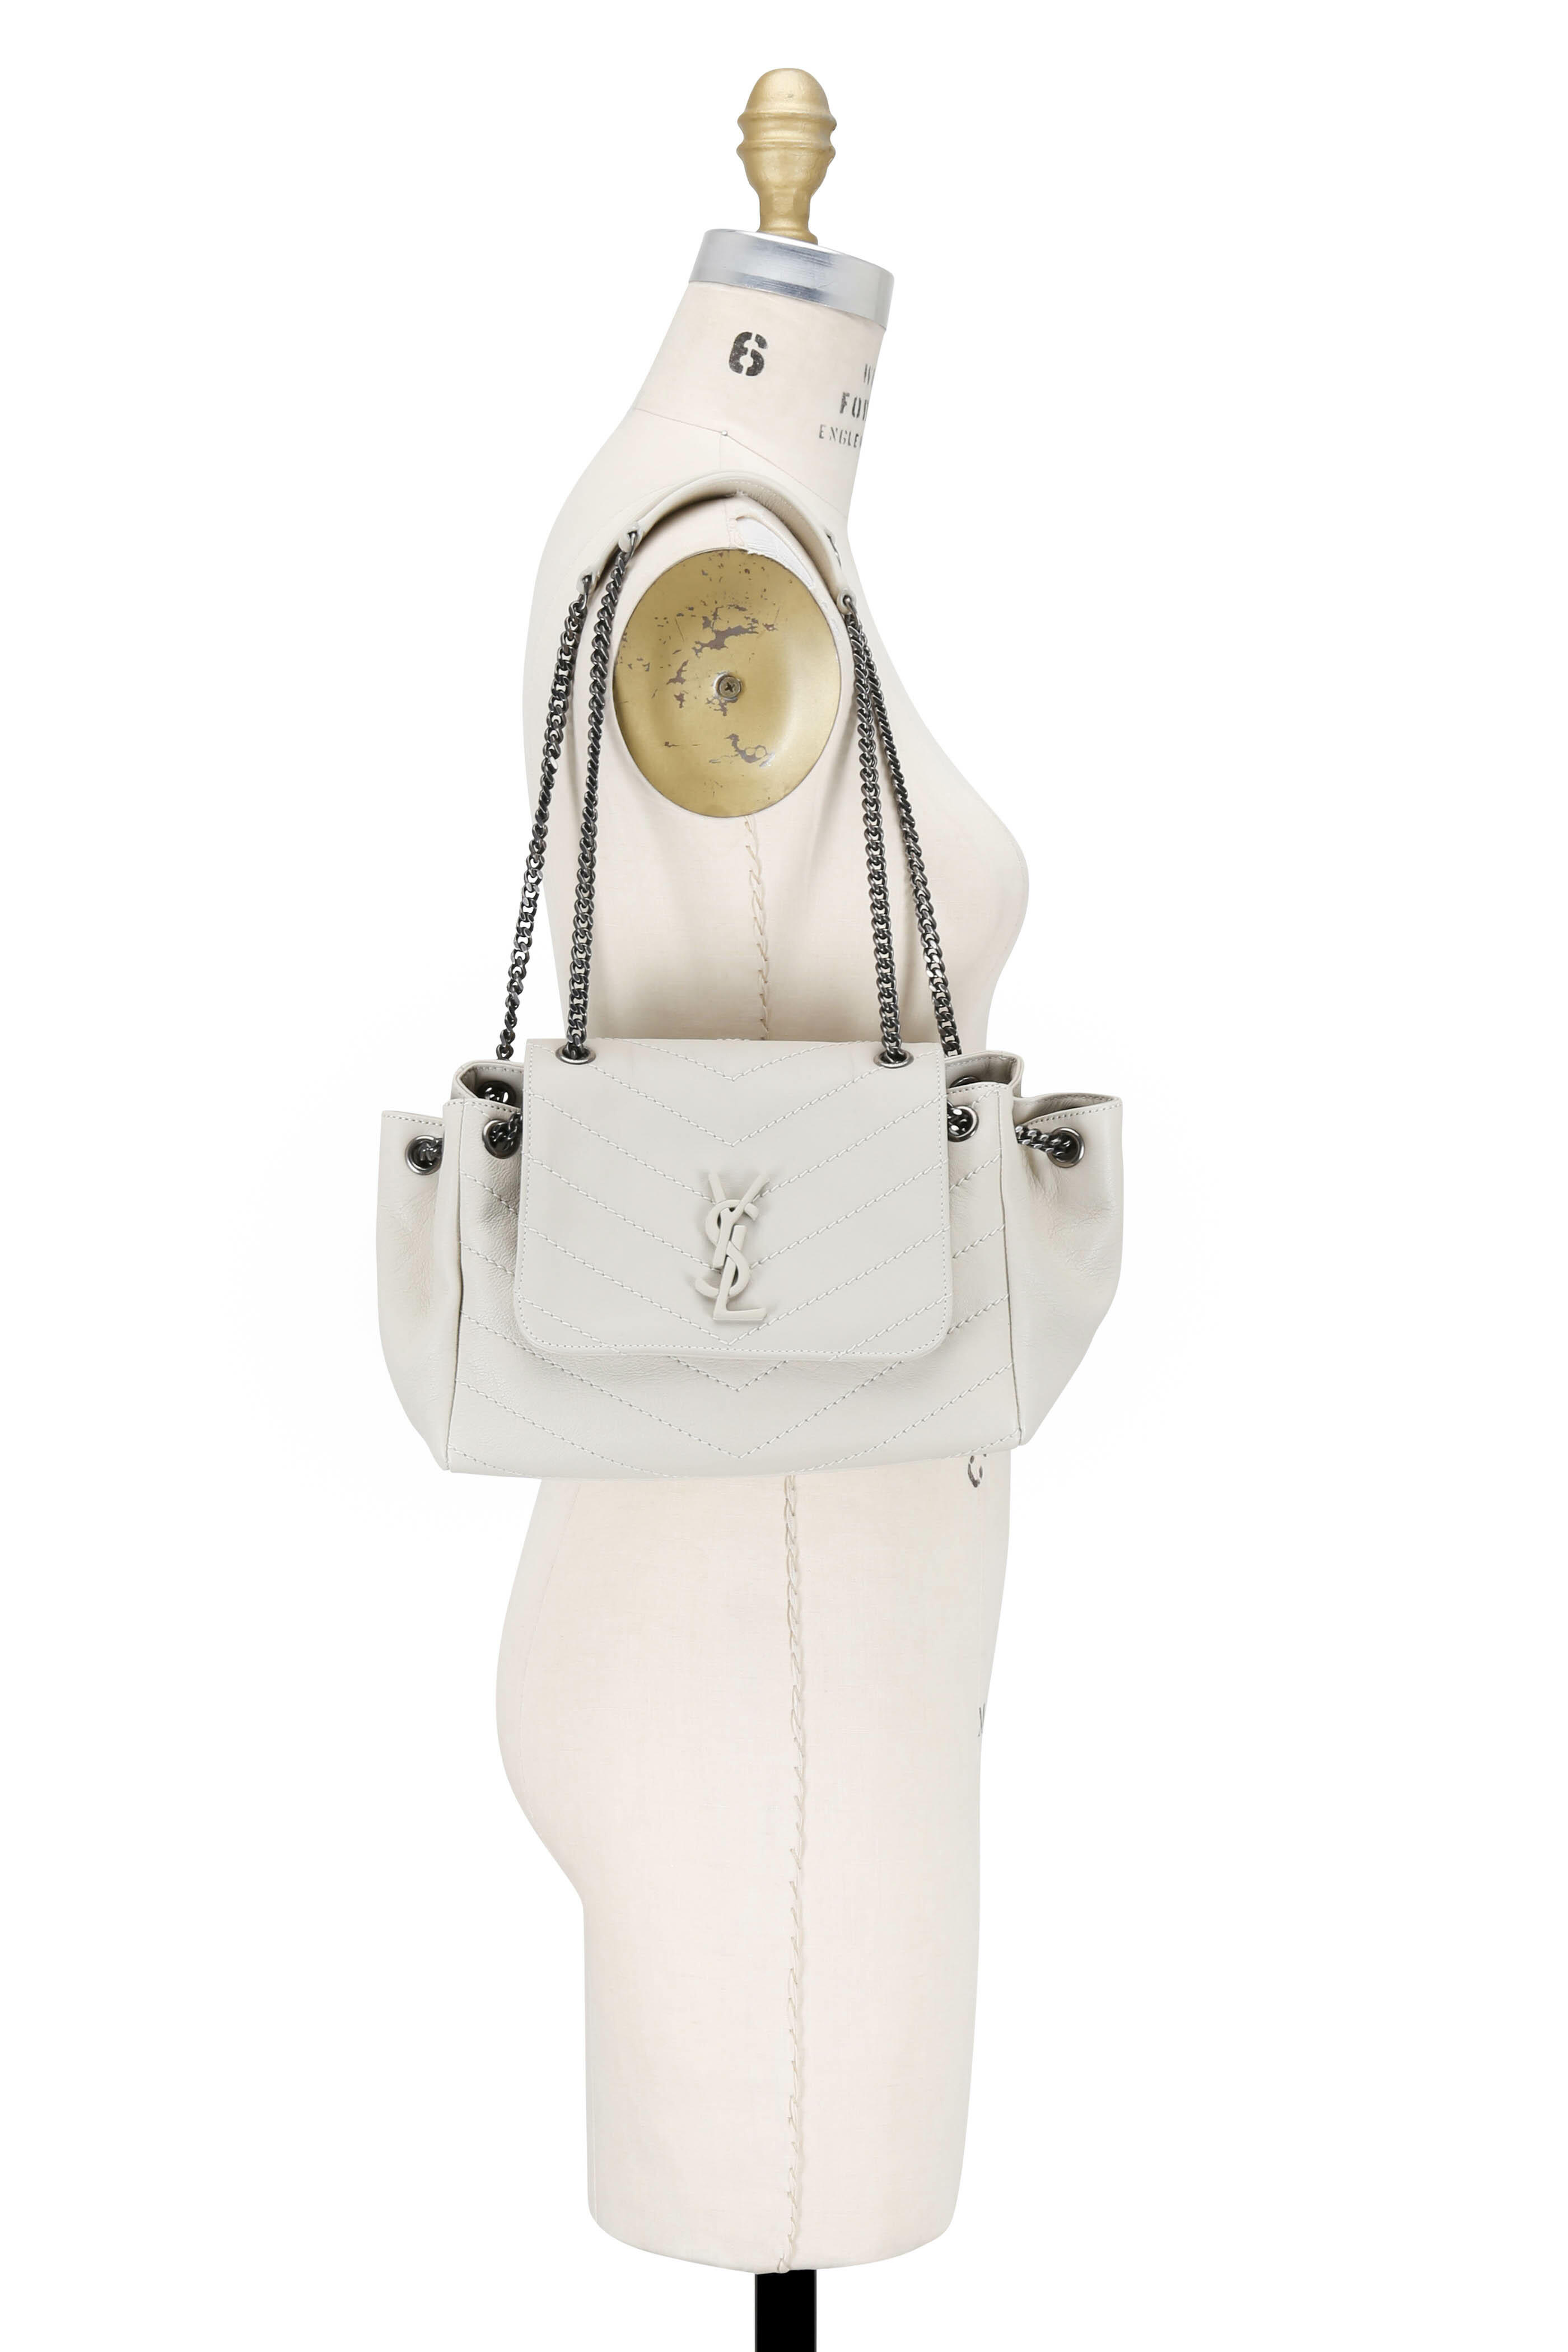 Louis Vuitton Monogram Nolita Bag - Brown Handle Bags, Handbags - LOU85605